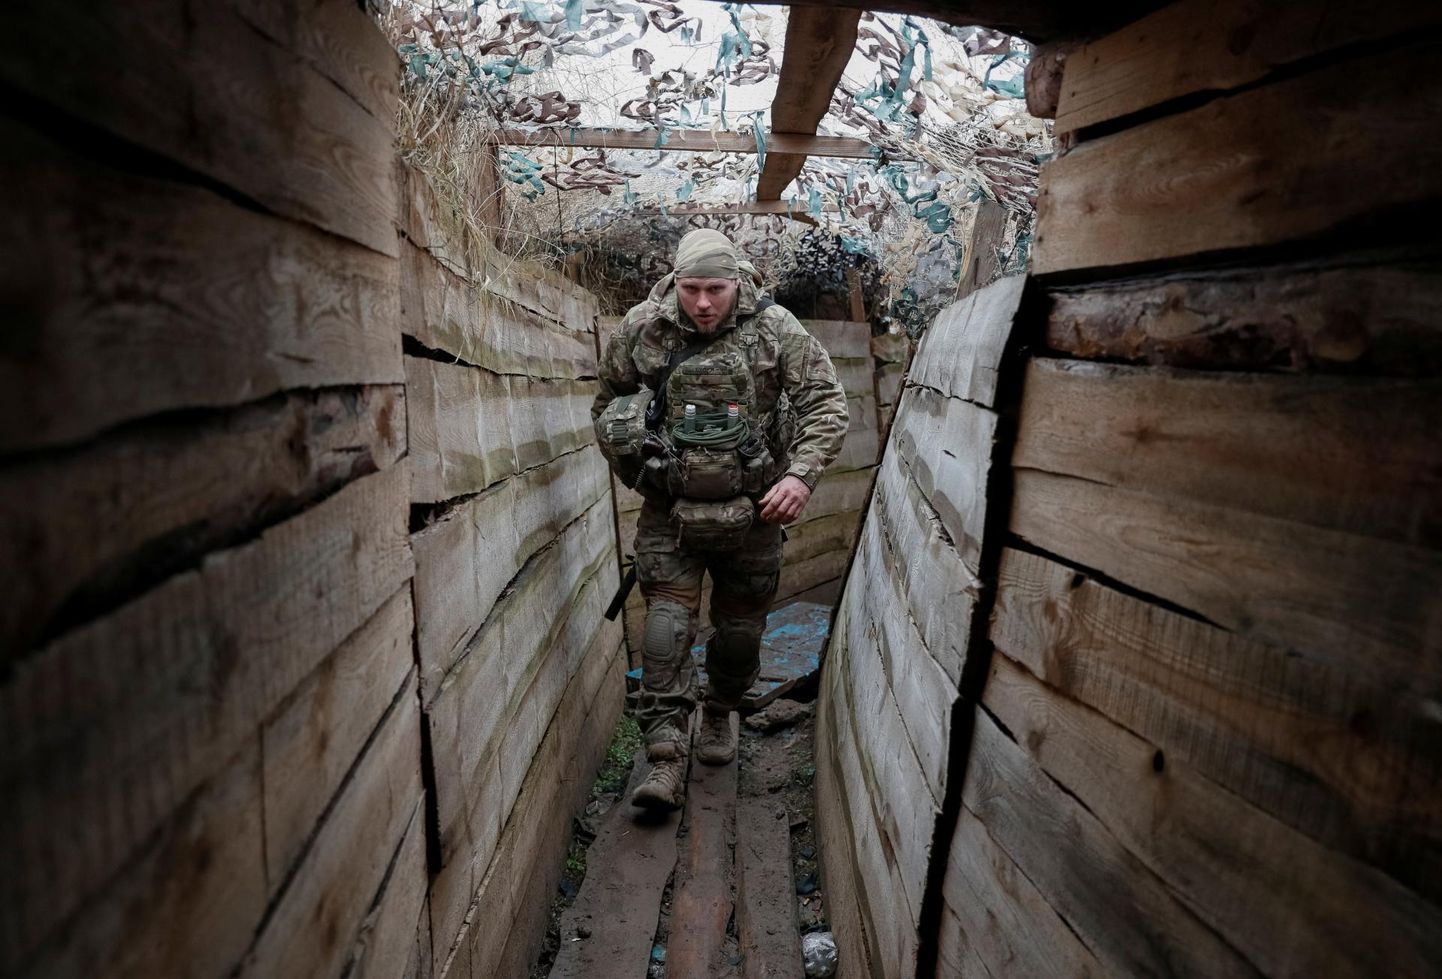 Venemaa sõda Ukraina vastu kestab 2014. aastast, pildil Ukraina kaitseväelane Avdijivka lähedal.